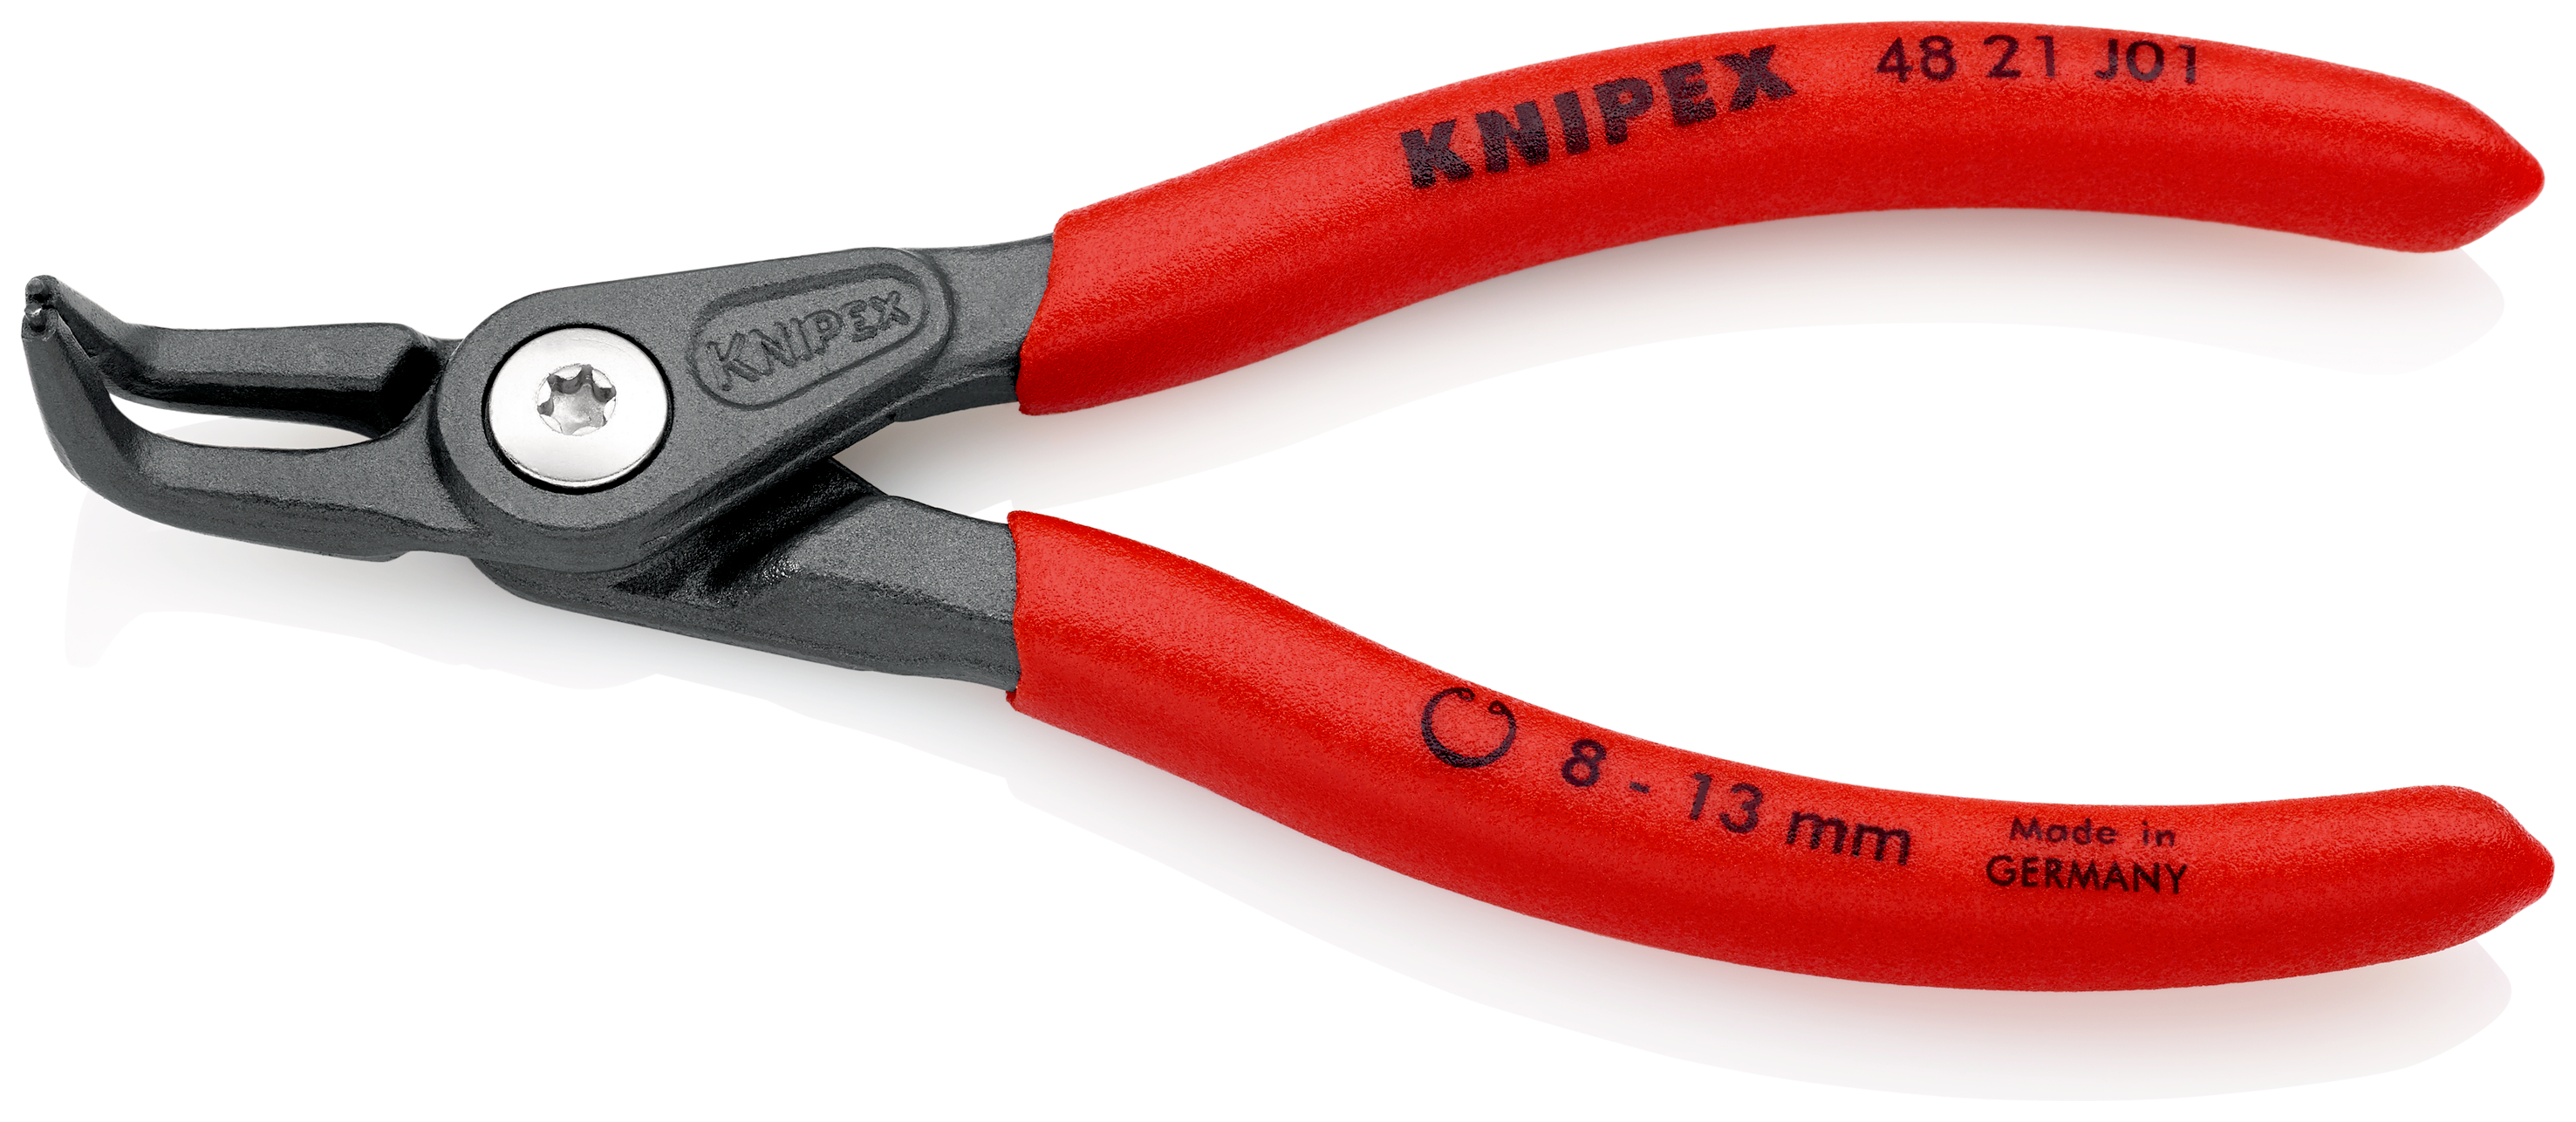 Knipex 4821J01 Cleste pentru inele de siguranta de interior, lungime 130 mm